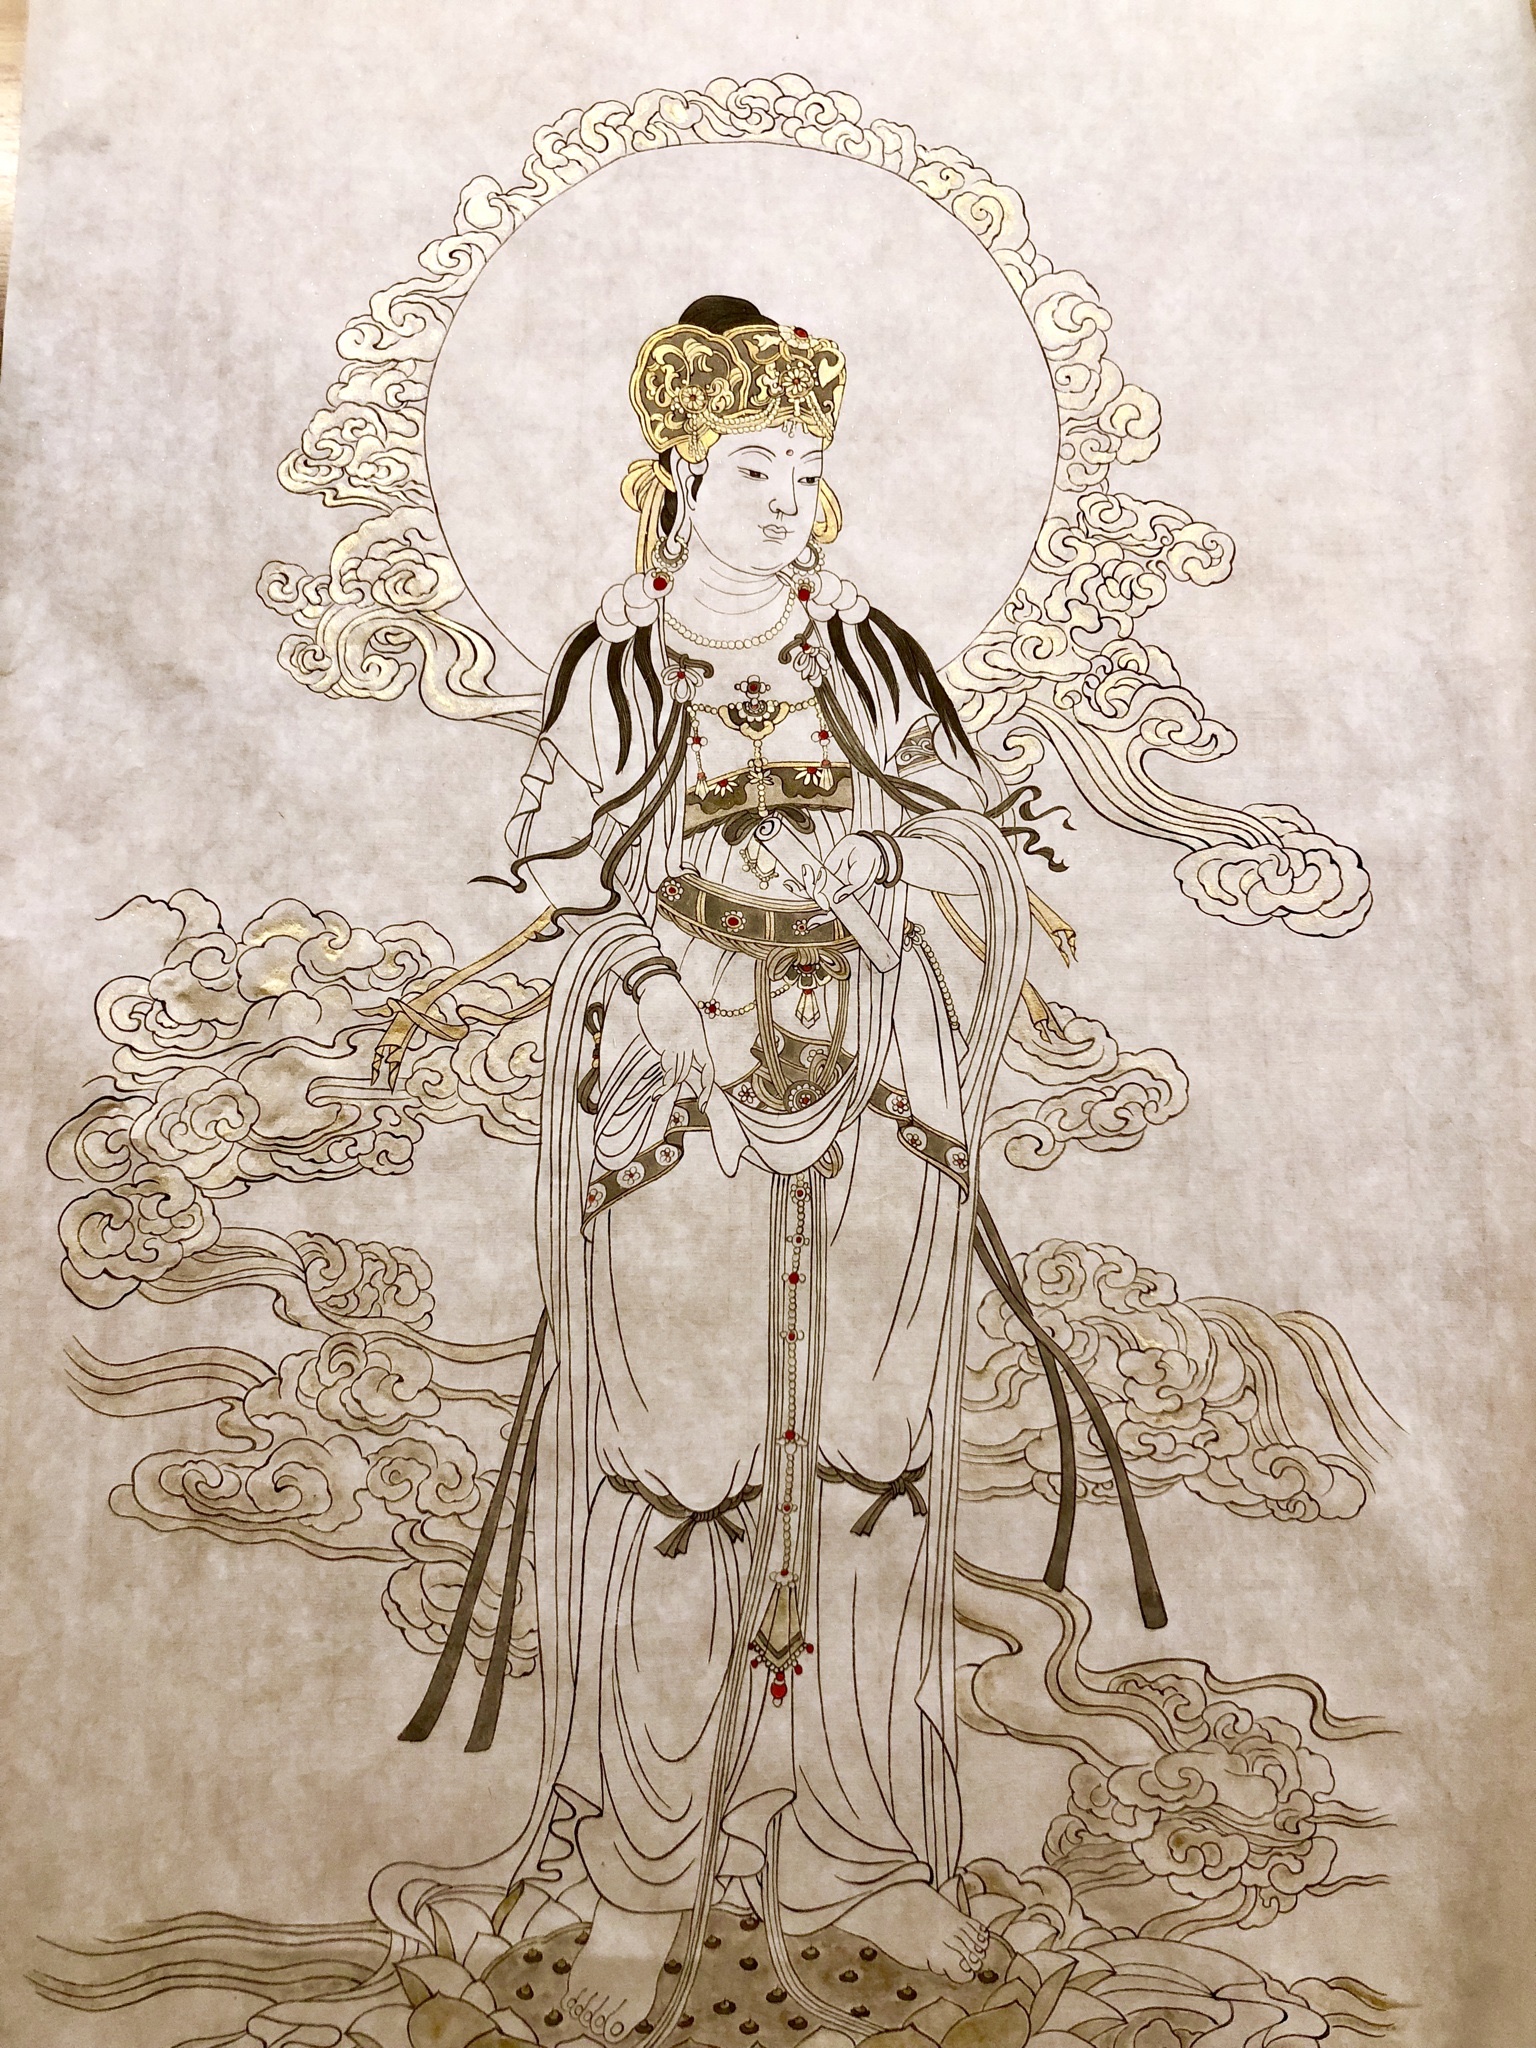 灵谷山房工笔手绘佛像系列课程第4期文殊菩萨像